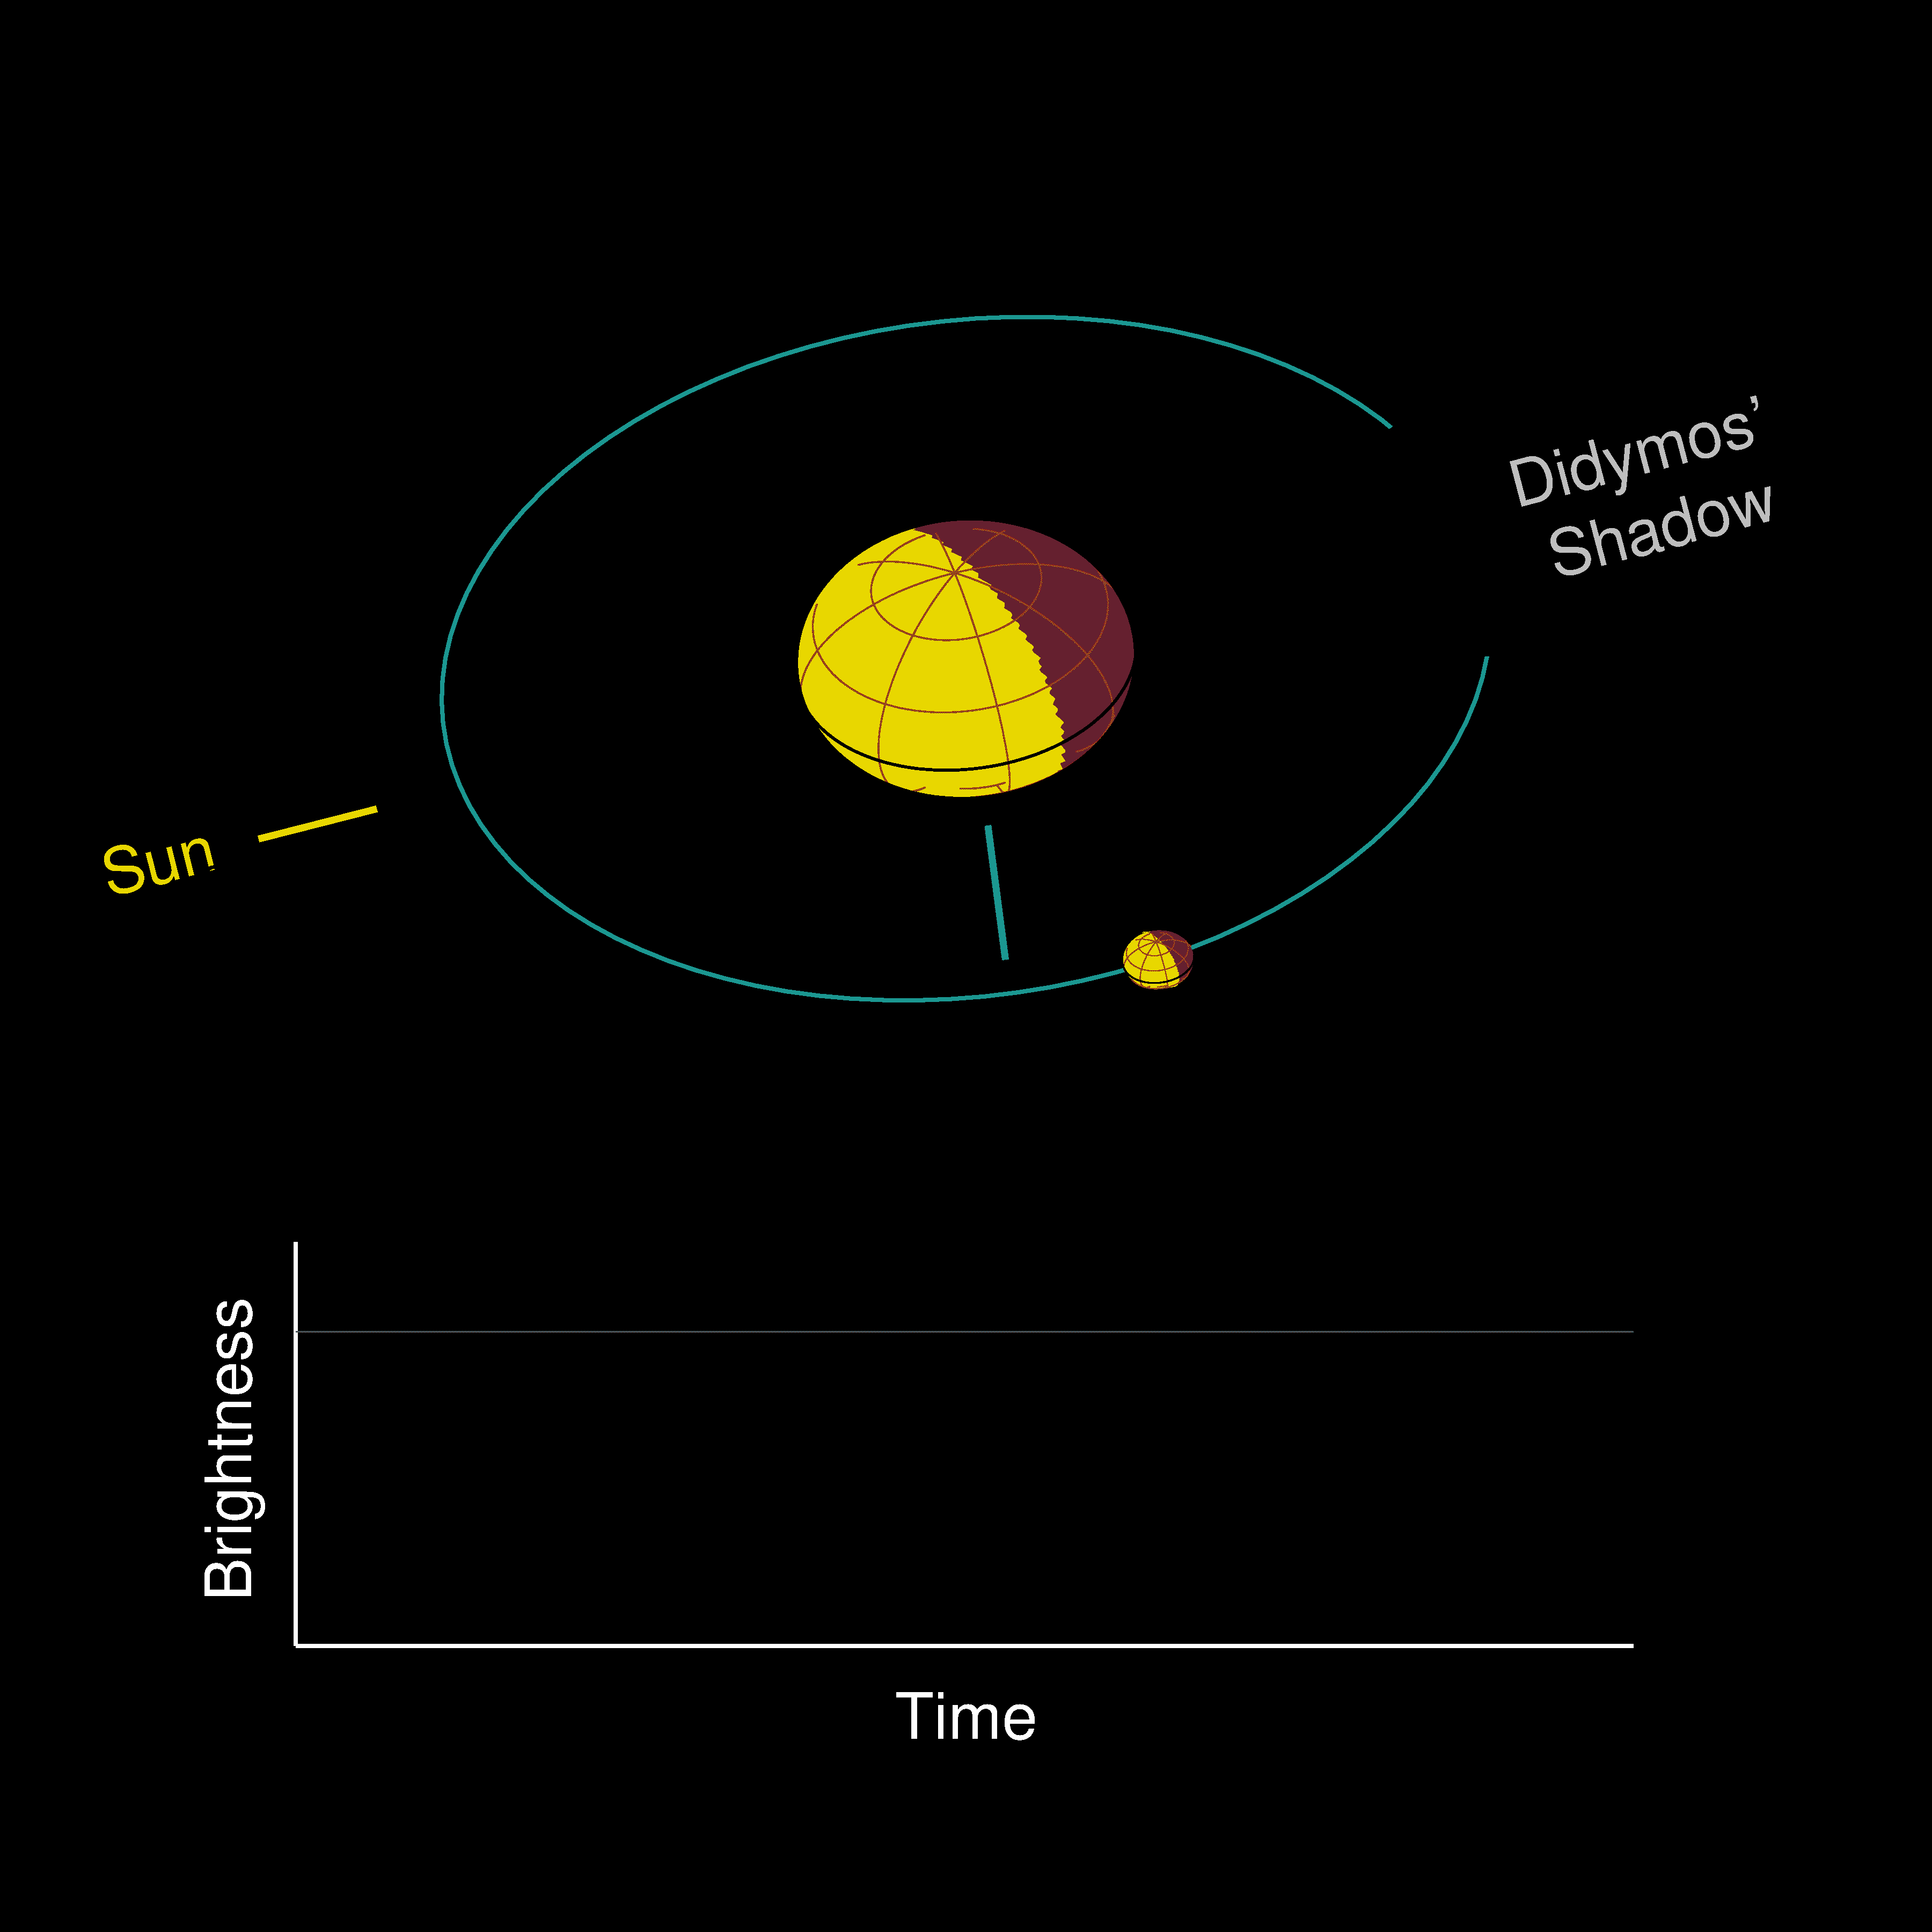 Diese Animation zeigt eine stark vergrößerte Ansicht der Umlaufbahn von Dimorphos um Didymos von der Erde aus gesehen, etwa eine Woche nach dem DART-Einschlag. Bei jedem Umlauf durchquert Dimorphos den von Didymos geworfenen Schatten und wirft einen halben Umlauf später kurz einen Schatten auf Didymos.